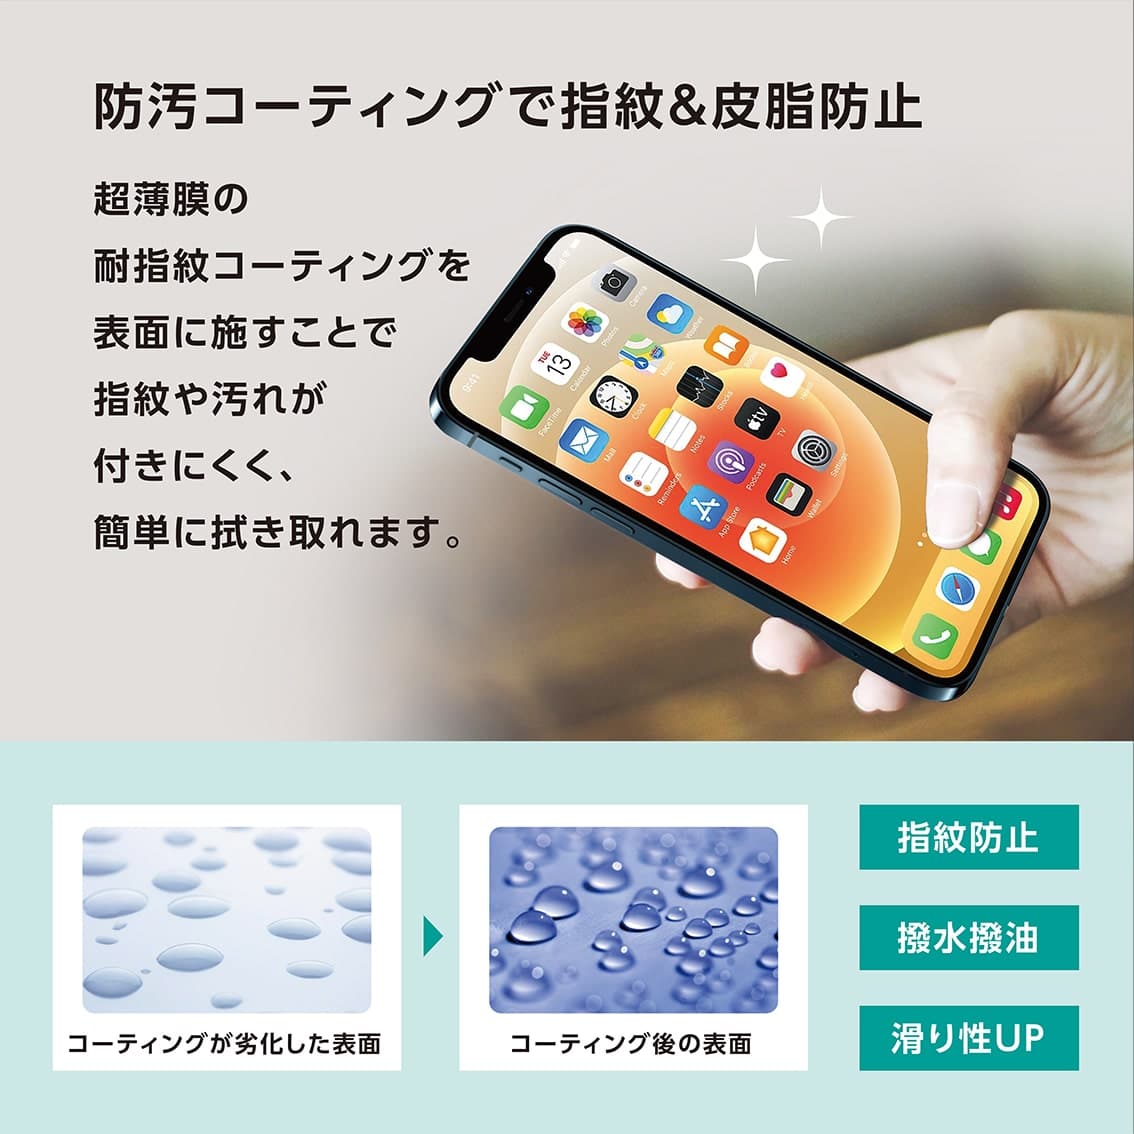 新型 iPhone13 Pro Max 対応 0.25mm 角割れ防止 PETフレーム付き ガラスフィルム クリア アンチグレアブルーライトカット ブルーライトカット 覗き見防止 iPhone 2021年モデル 6.7インチ